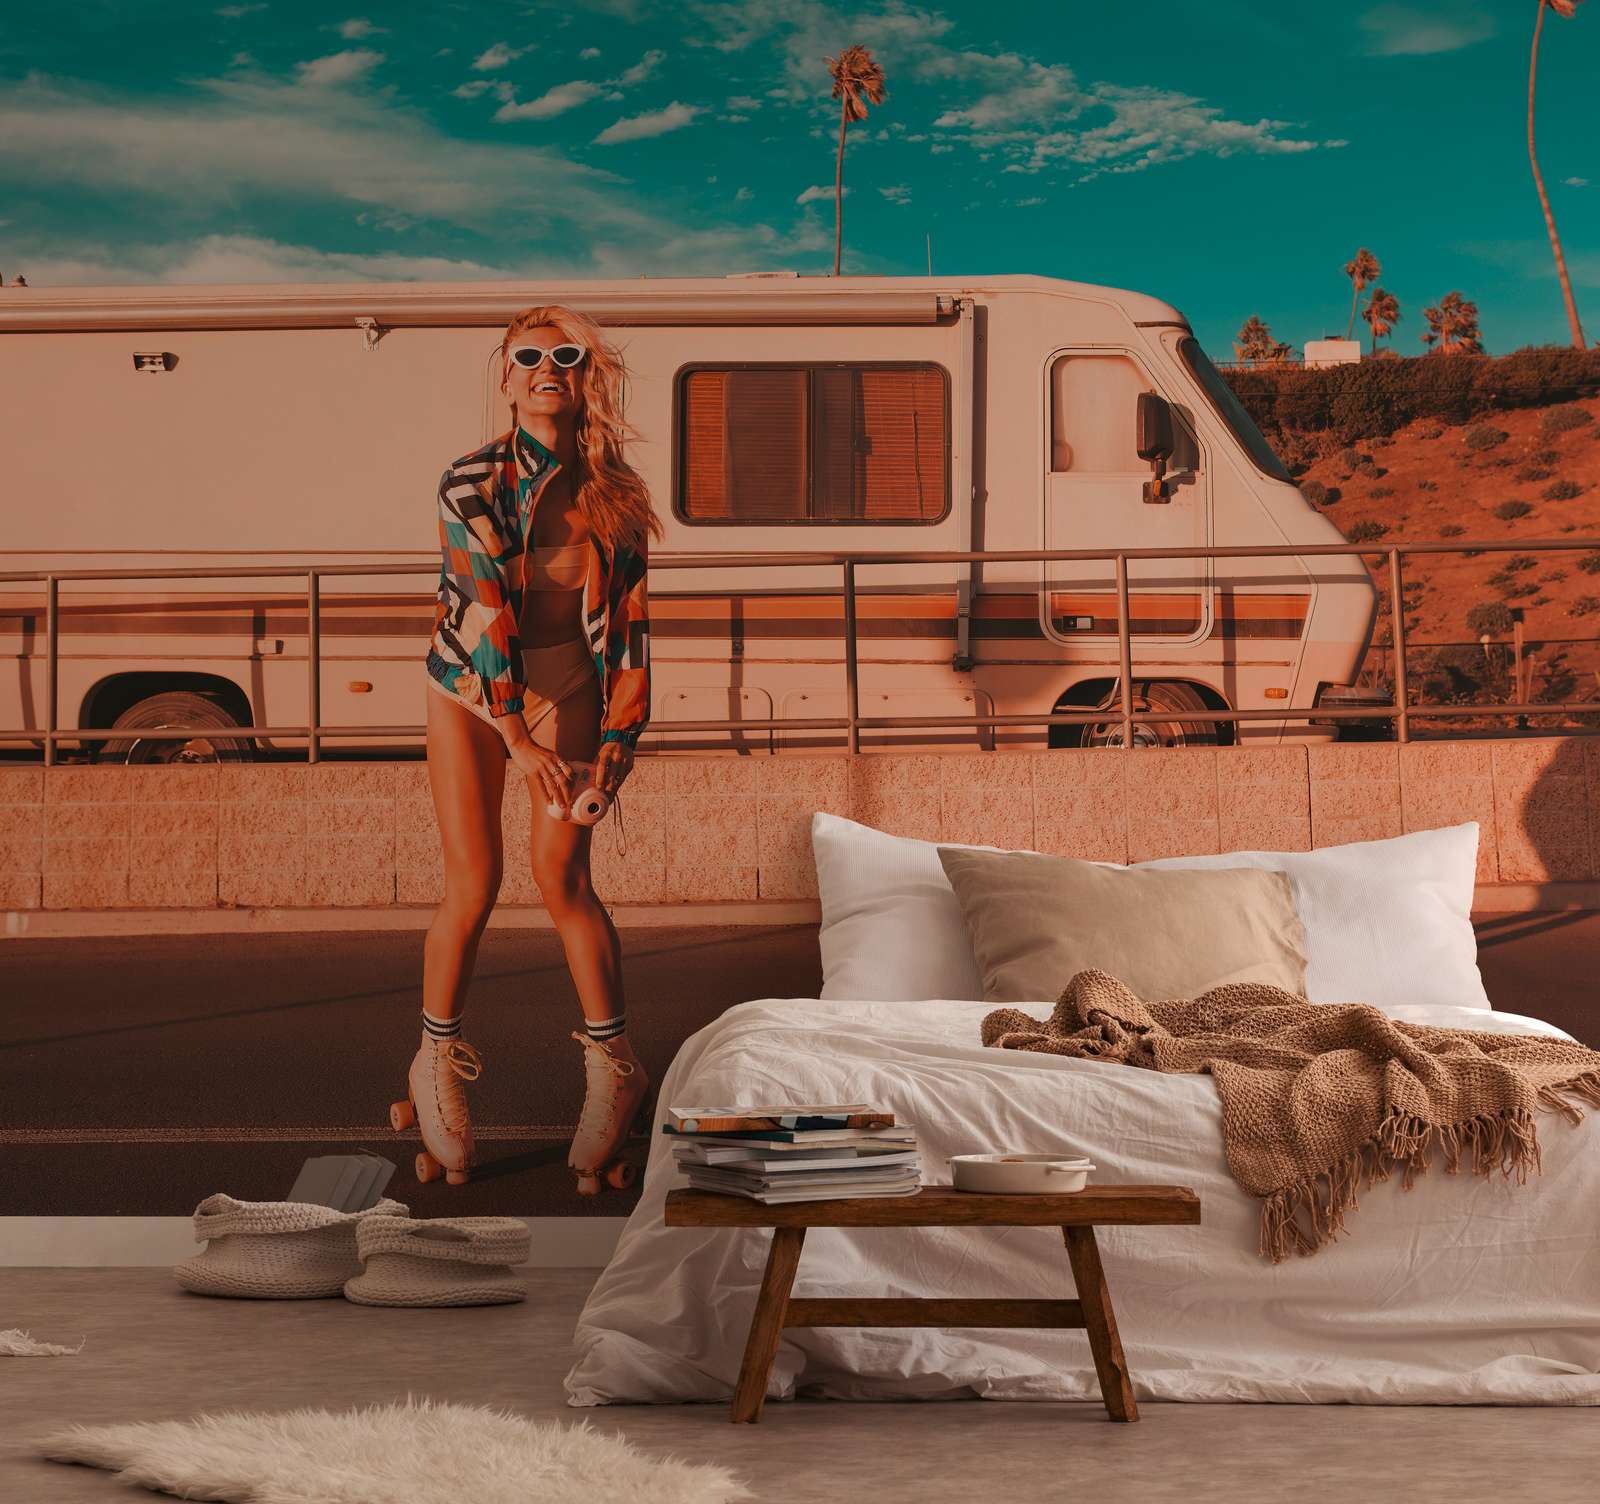             Fototapete mit Skater Girl und Camper im Sommer Vibe – Blau, Orange, Beige
        